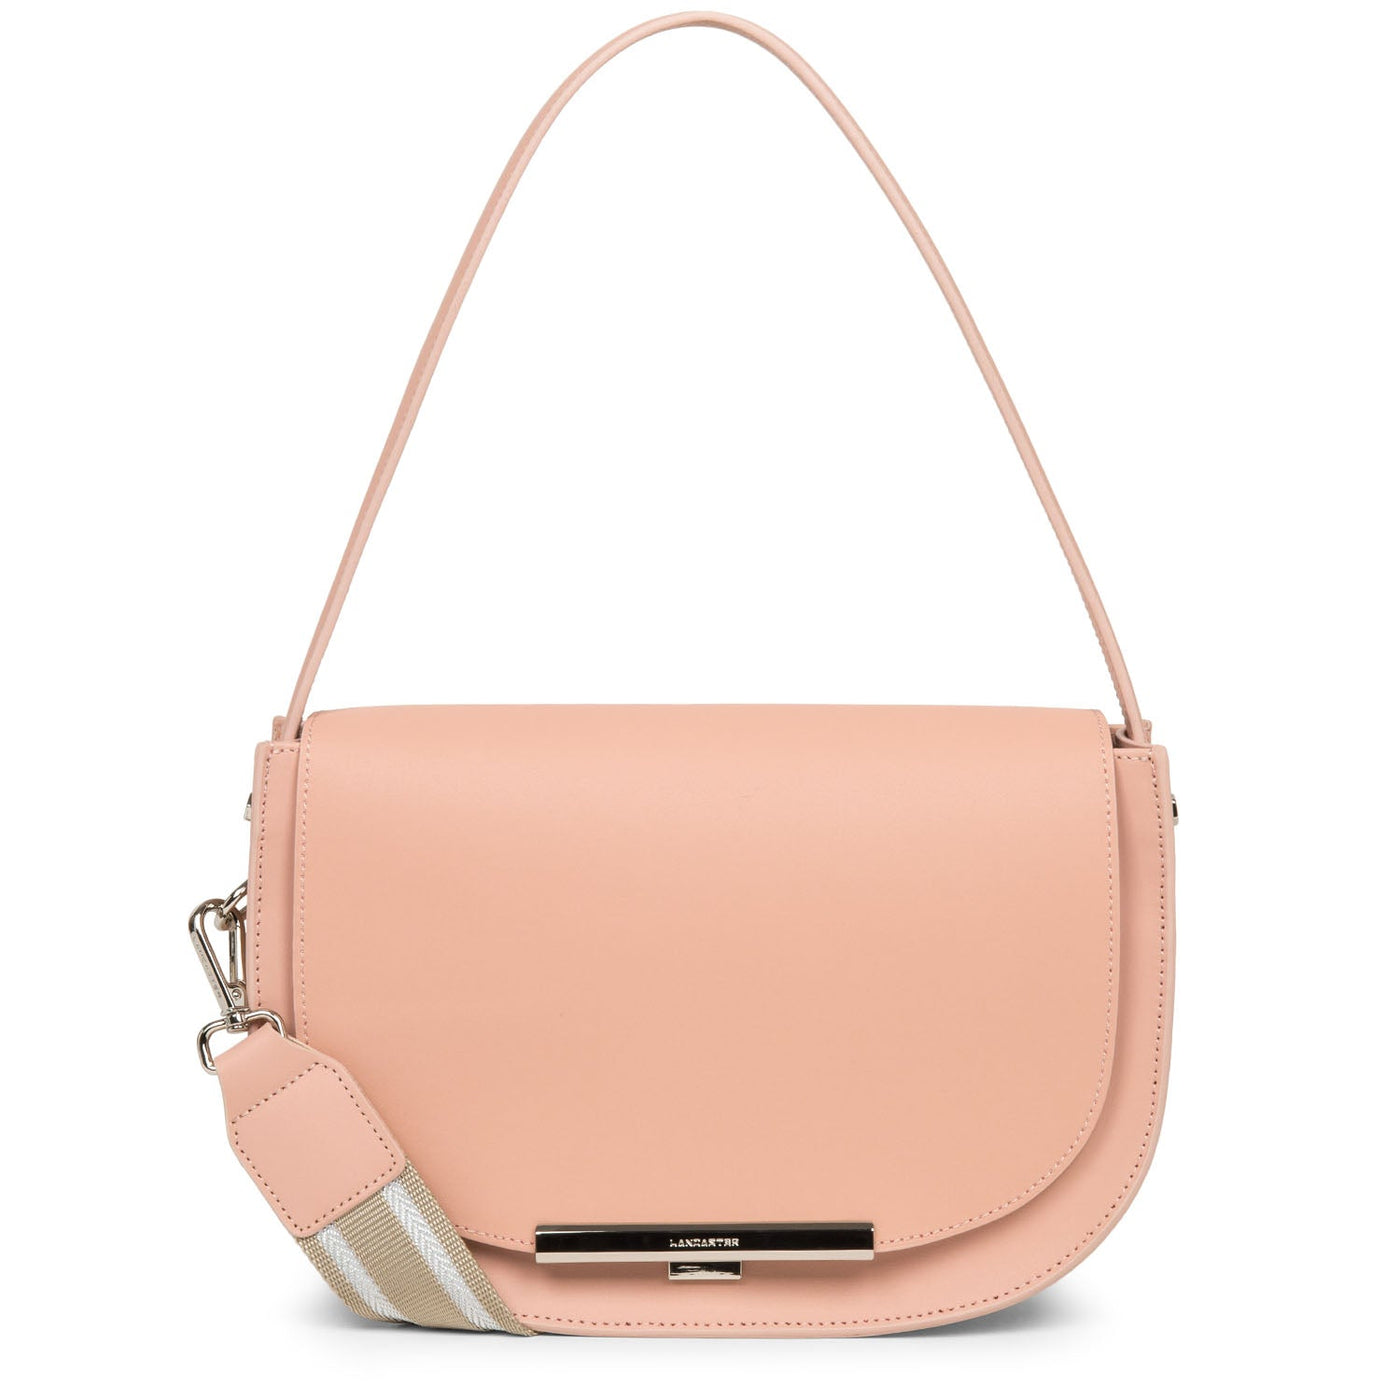 handbag - city lina #couleur_poudre